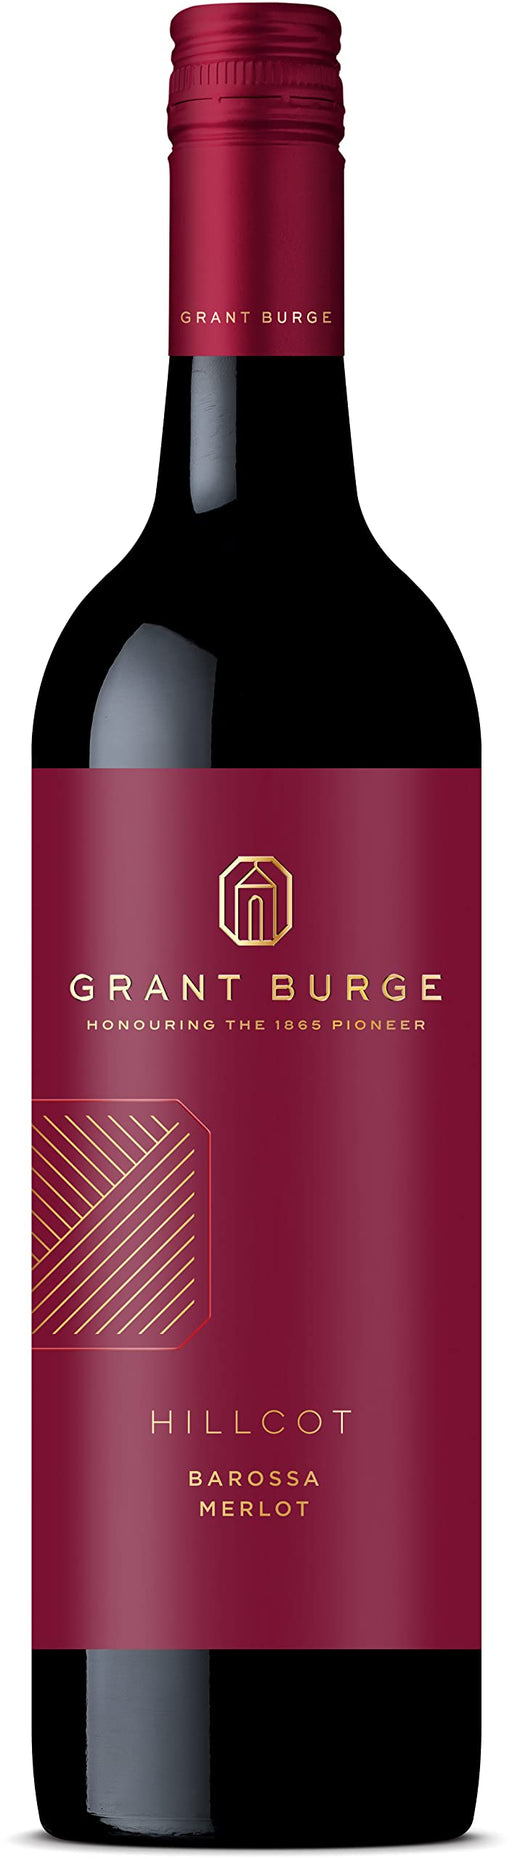 Grant Burge Hillcot Merlot 750 ml (Pack Of 6)  Grant Burge